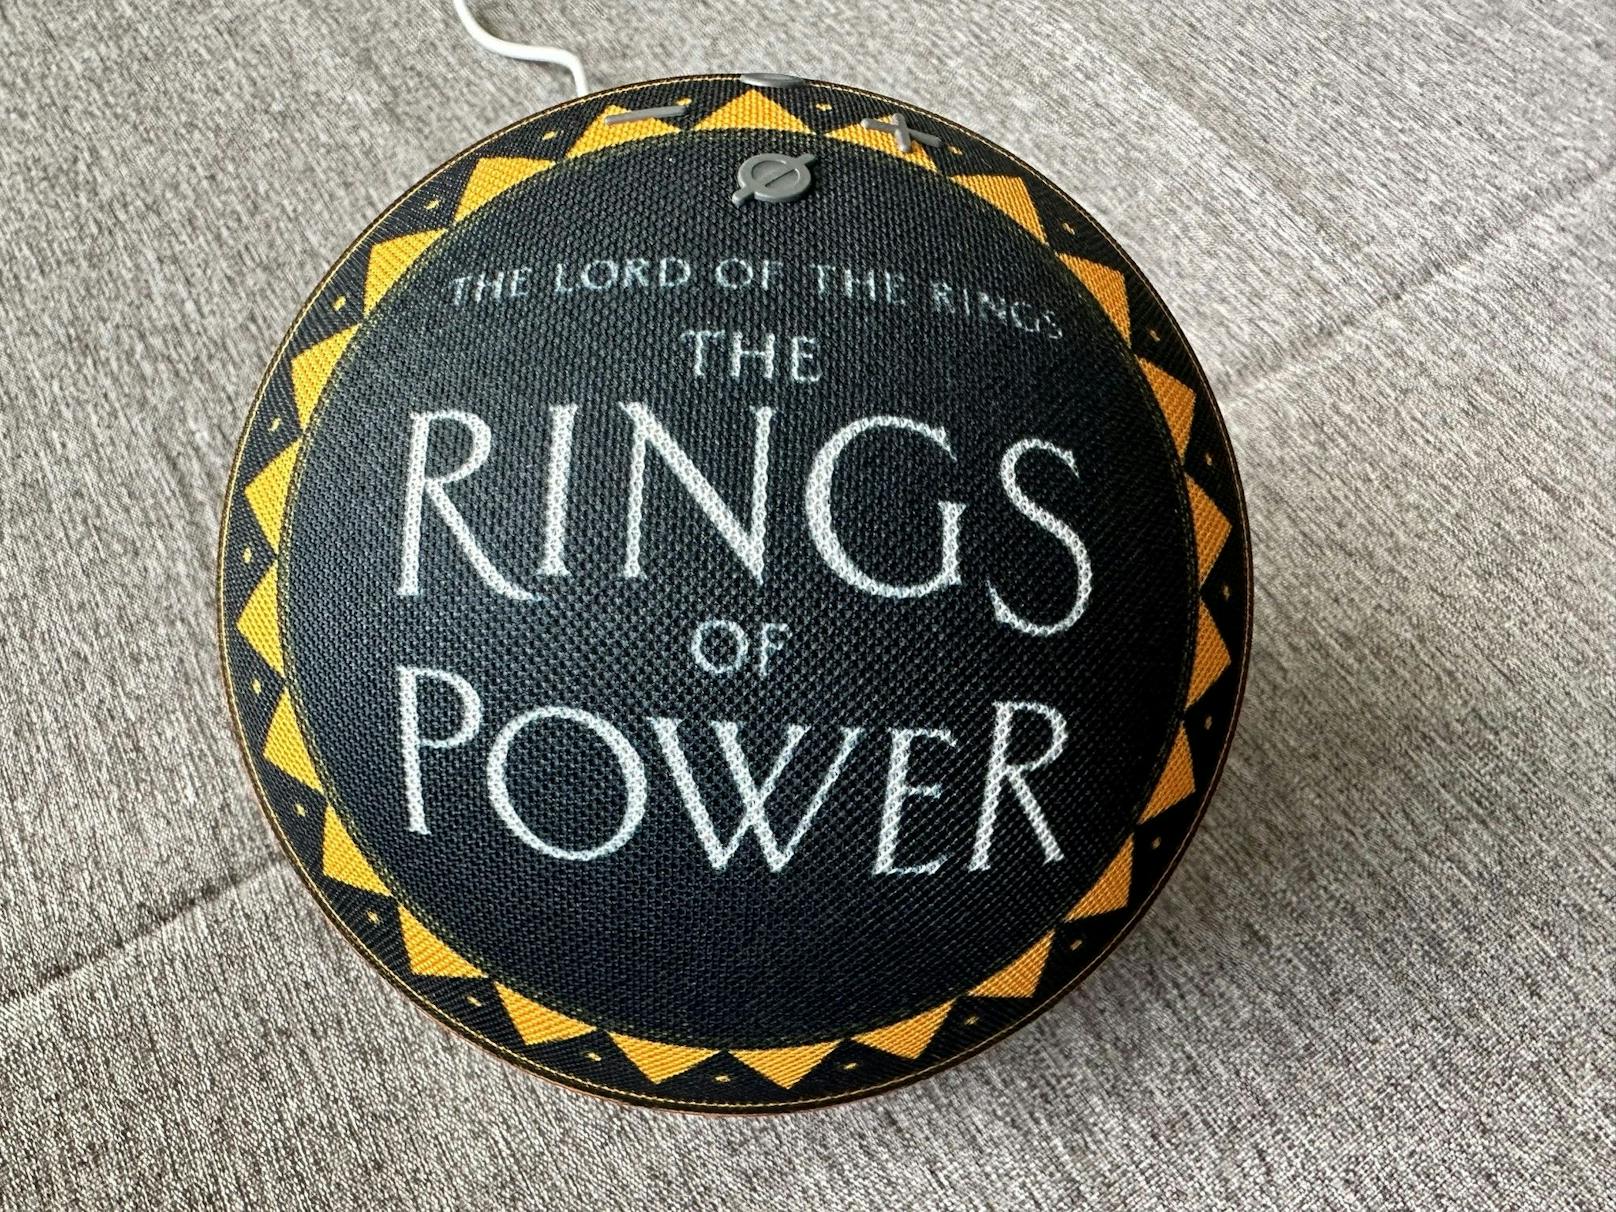 ...findet sich in weißen Lettern der Schriftzug "The Lord of the Rings The Rings of Power", umrandet von einem gelb-goldenen Kreis aus Dreiecken und Punkten.